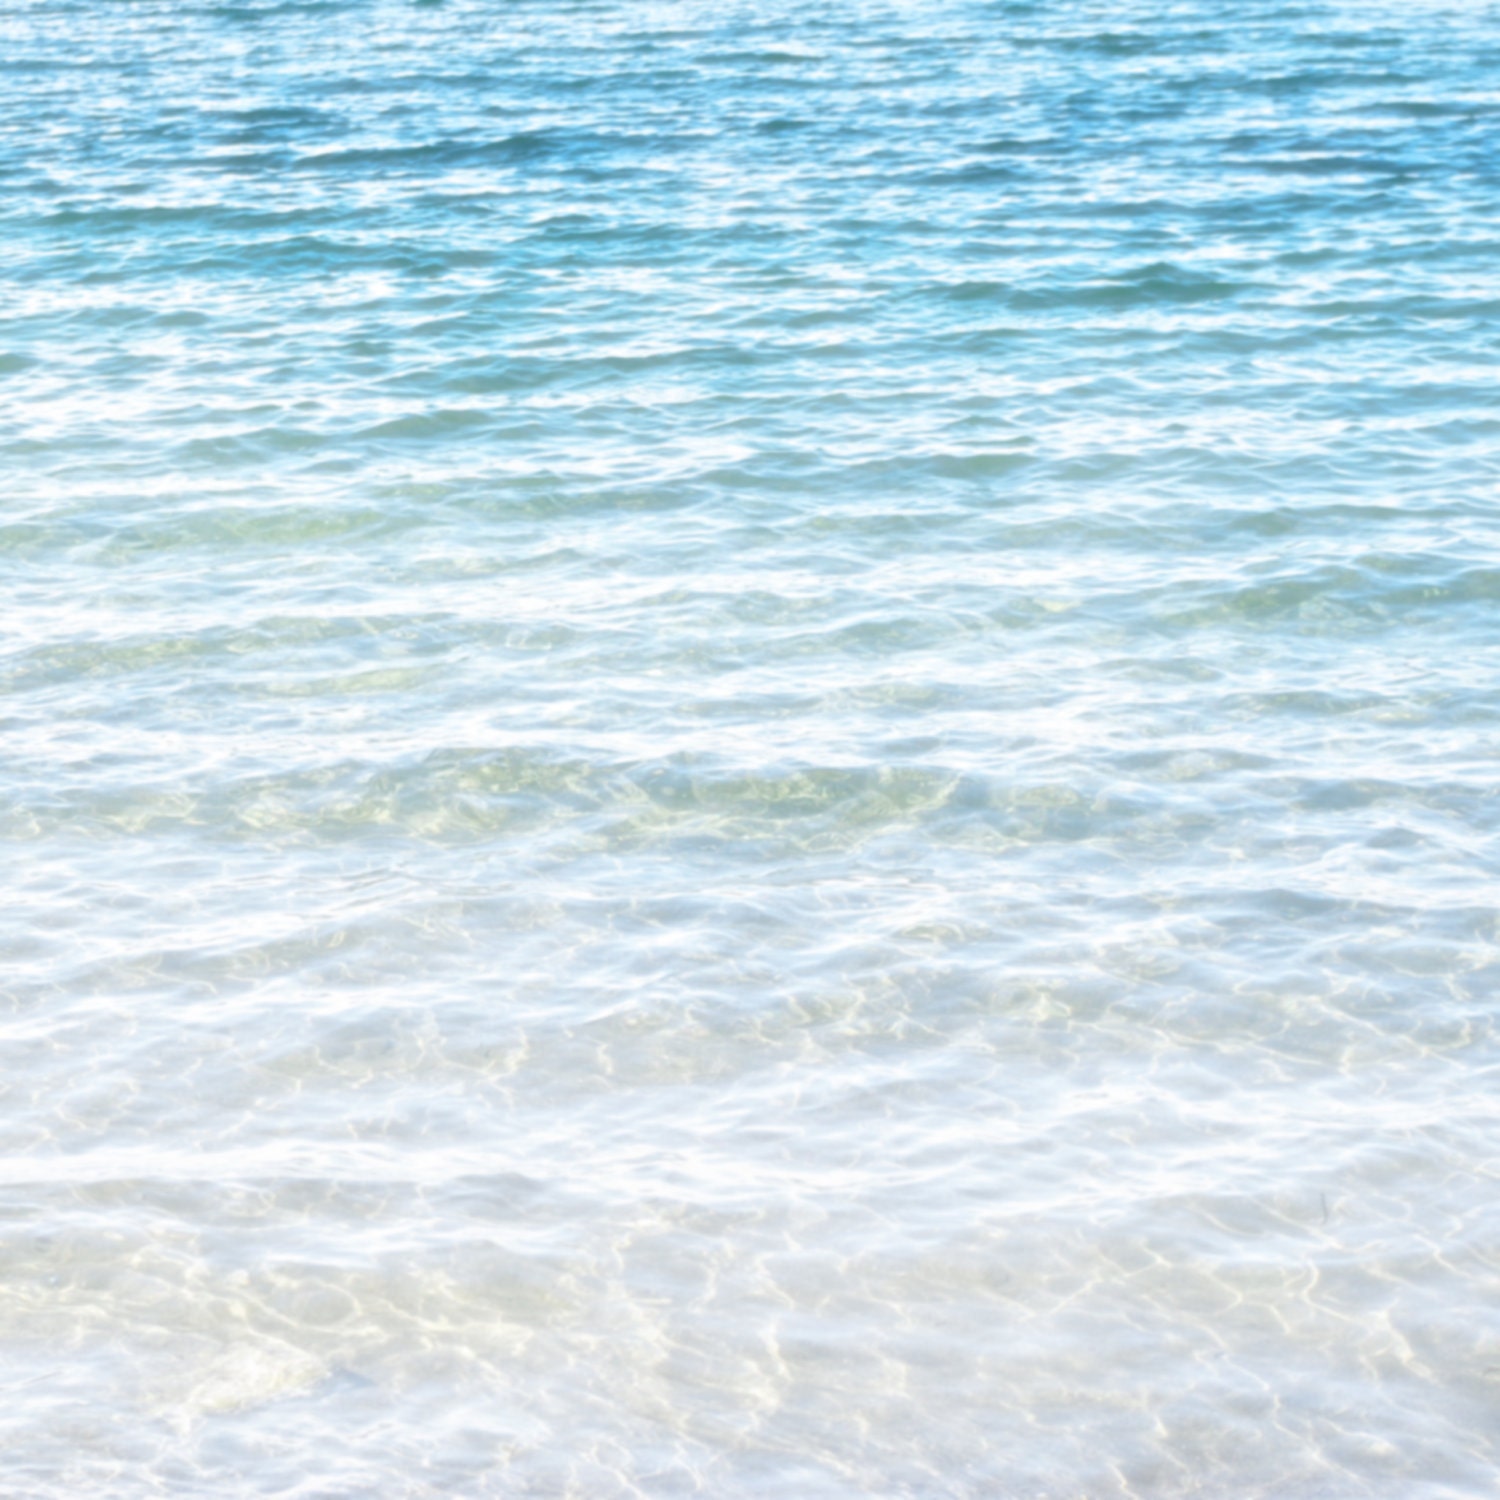 Beach Waves Ocean Green Blue Water 8x8 Fine Art Photography Print - LTphotographs